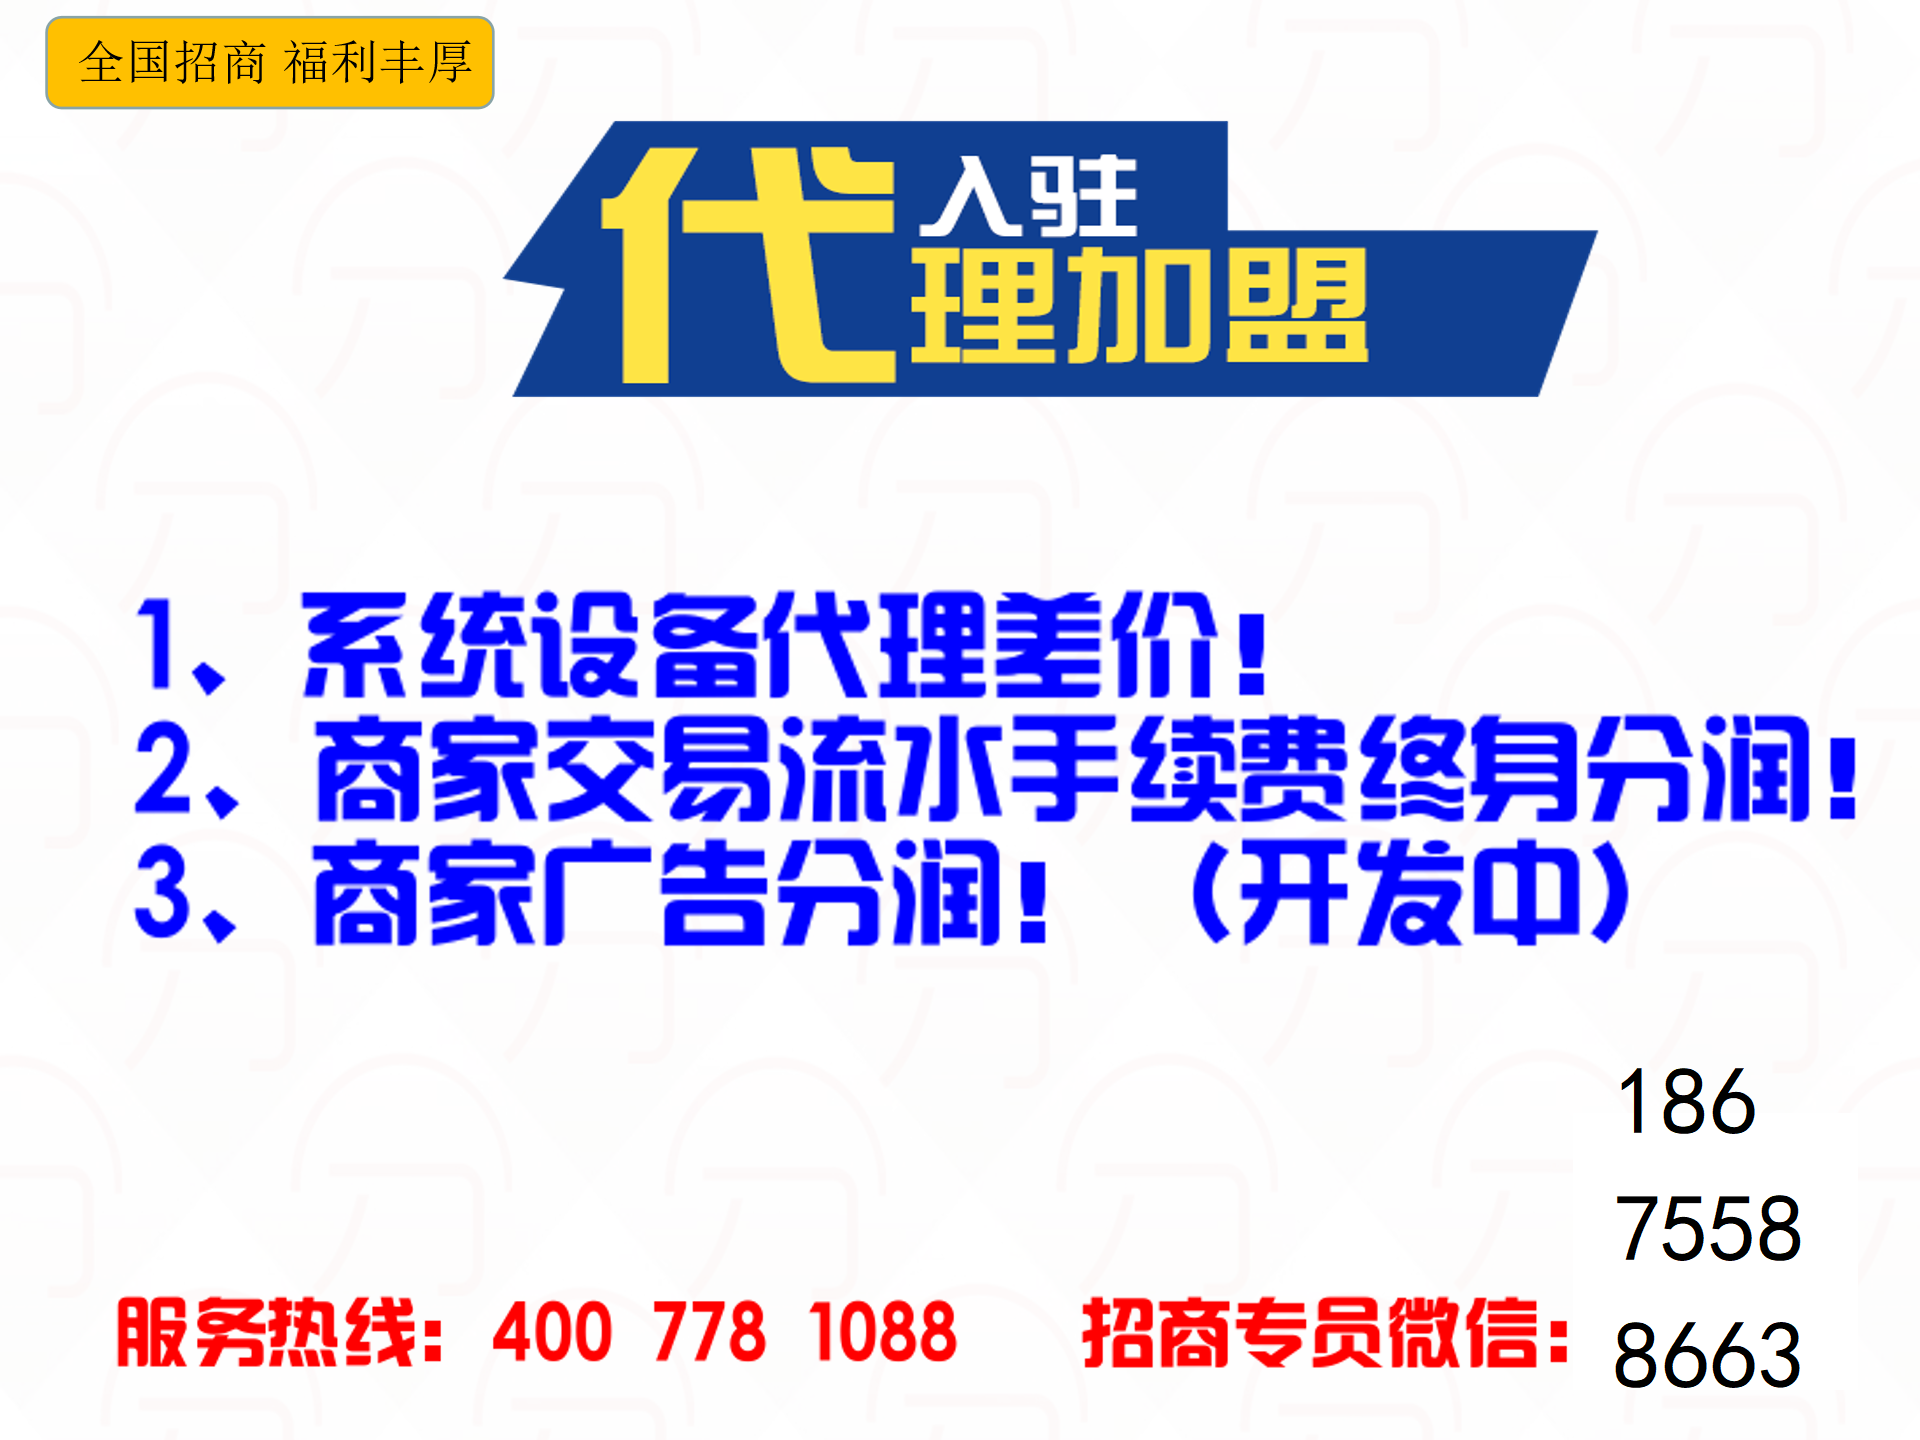 我们推荐一卡通异业联盟系统_异业联盟系统哪个好相关-深圳市中贤在线技术有限公司